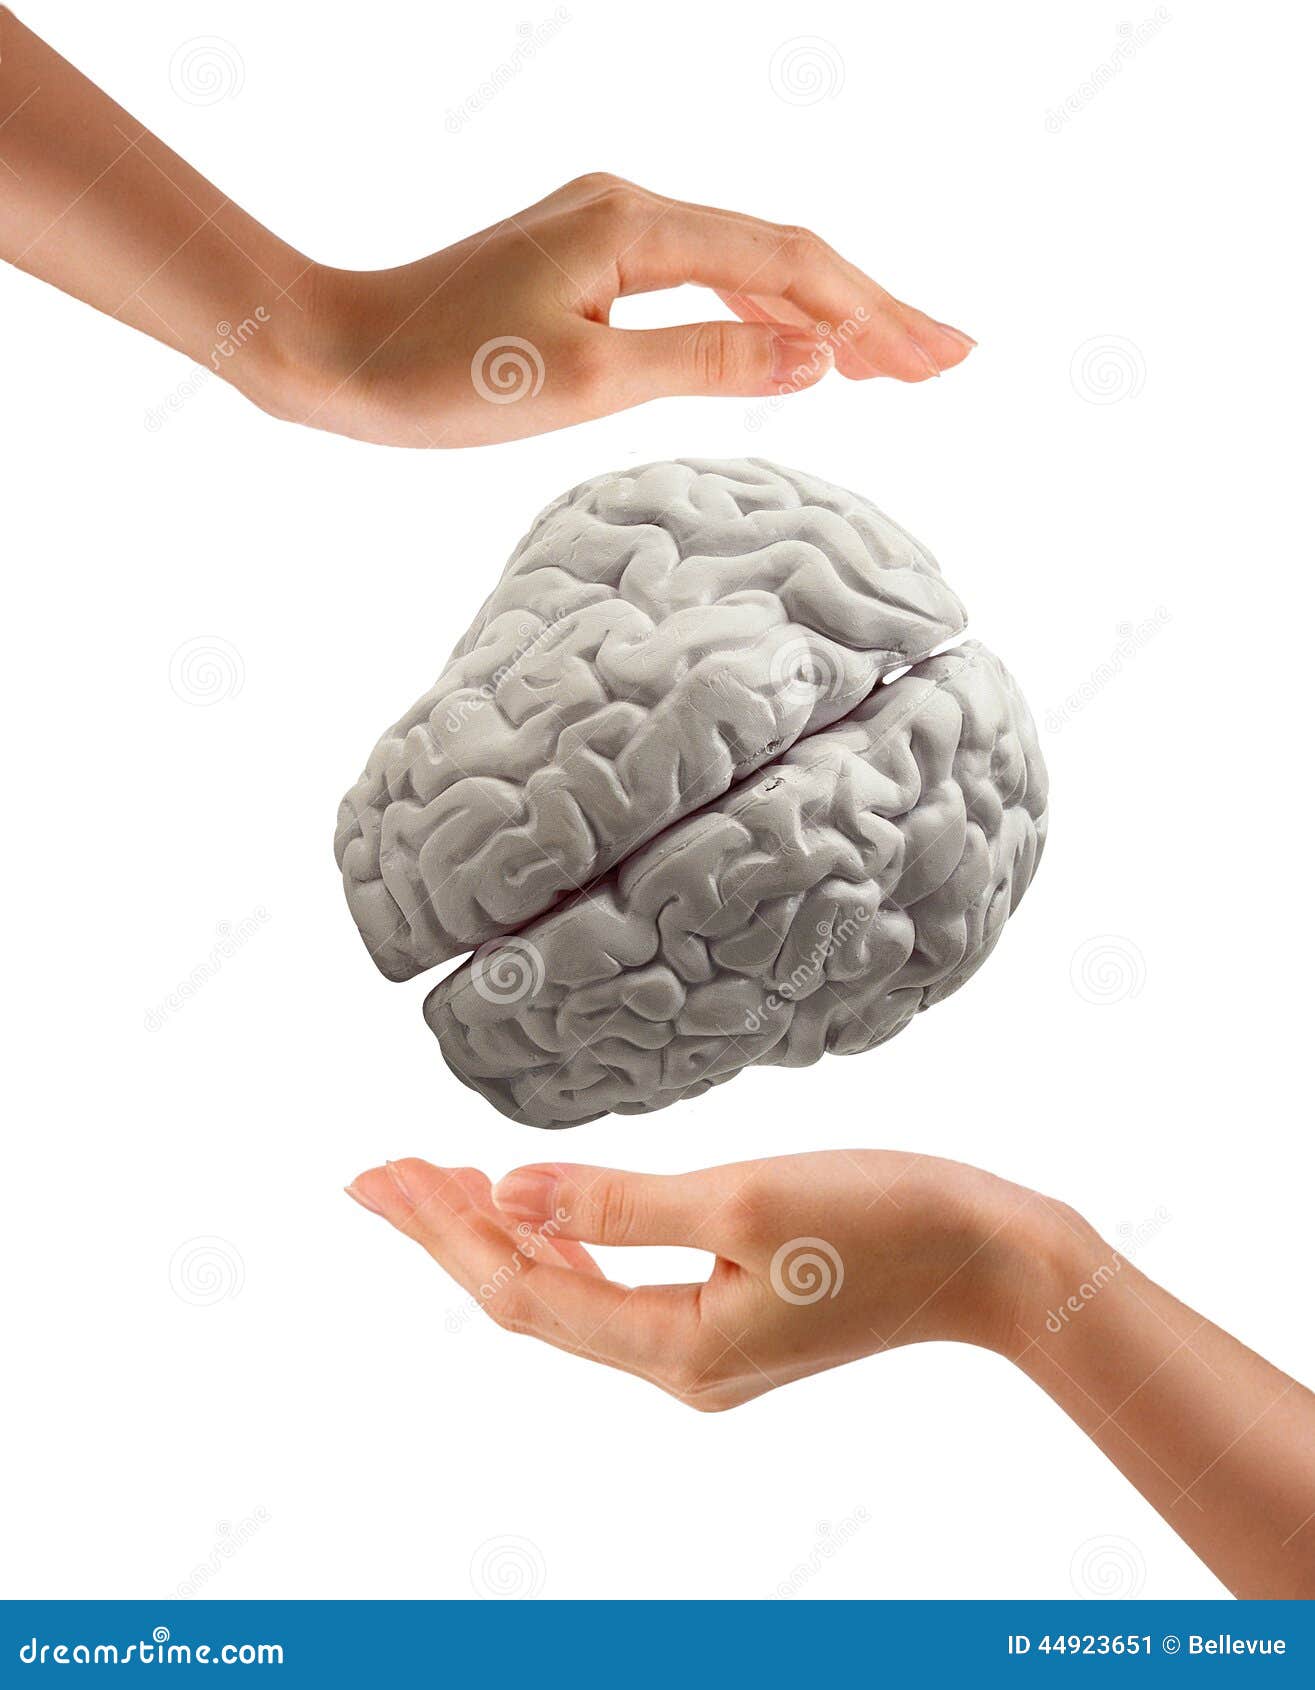 Пальцы рук и мозг. Мозг в руках на белом фоне. Руки держат мозг. Человек держит мозг в руках. Рука держит мозги.